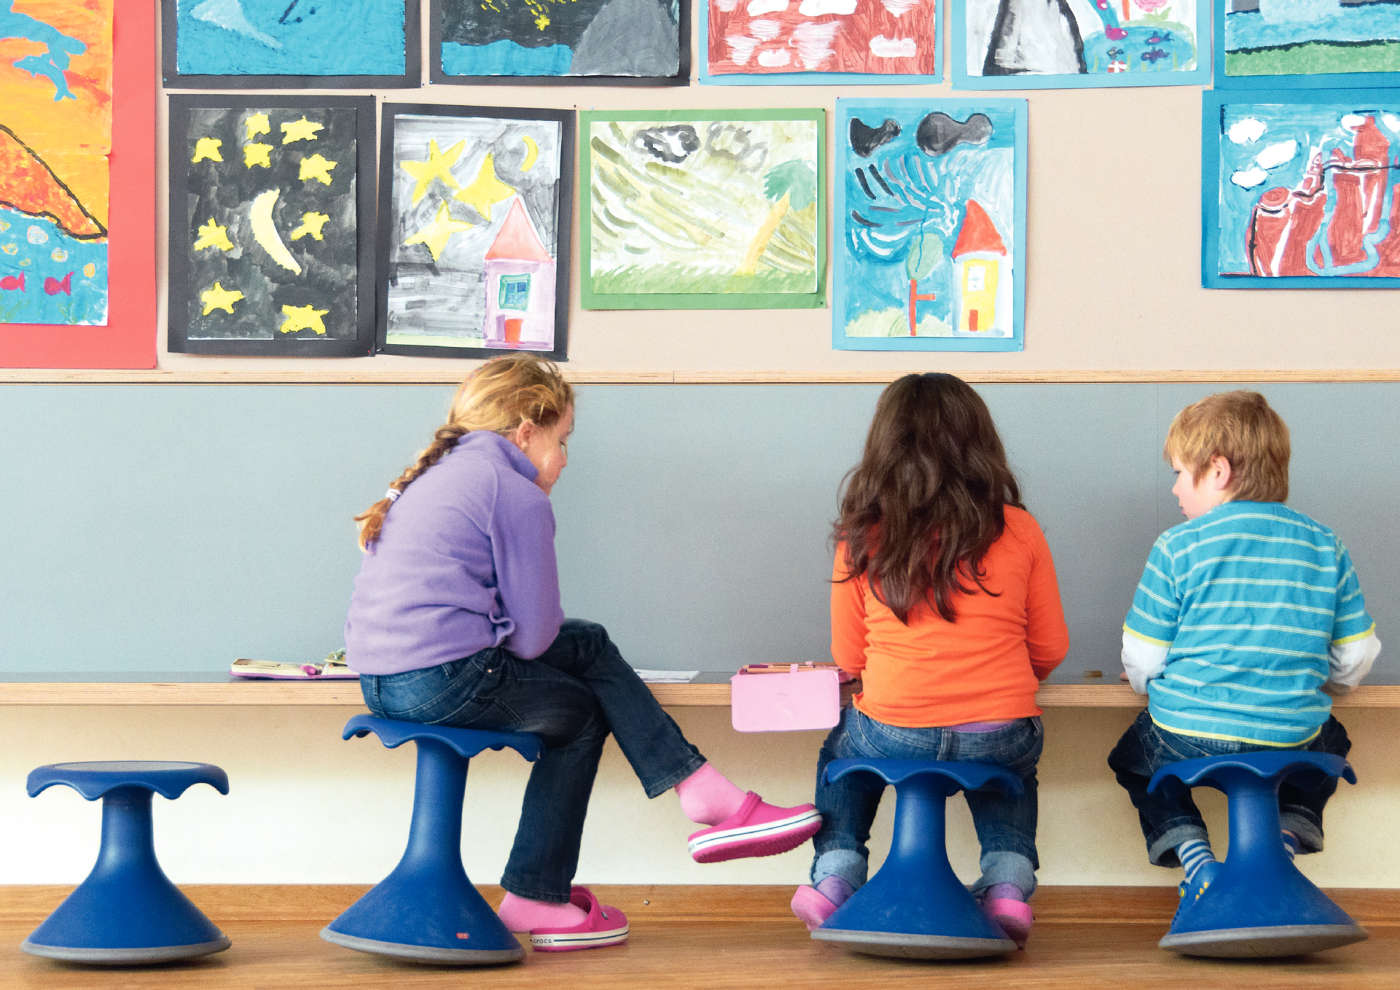 Le préféré des enfants : le siège Hokki aux couleurs gaies pour une assise active.